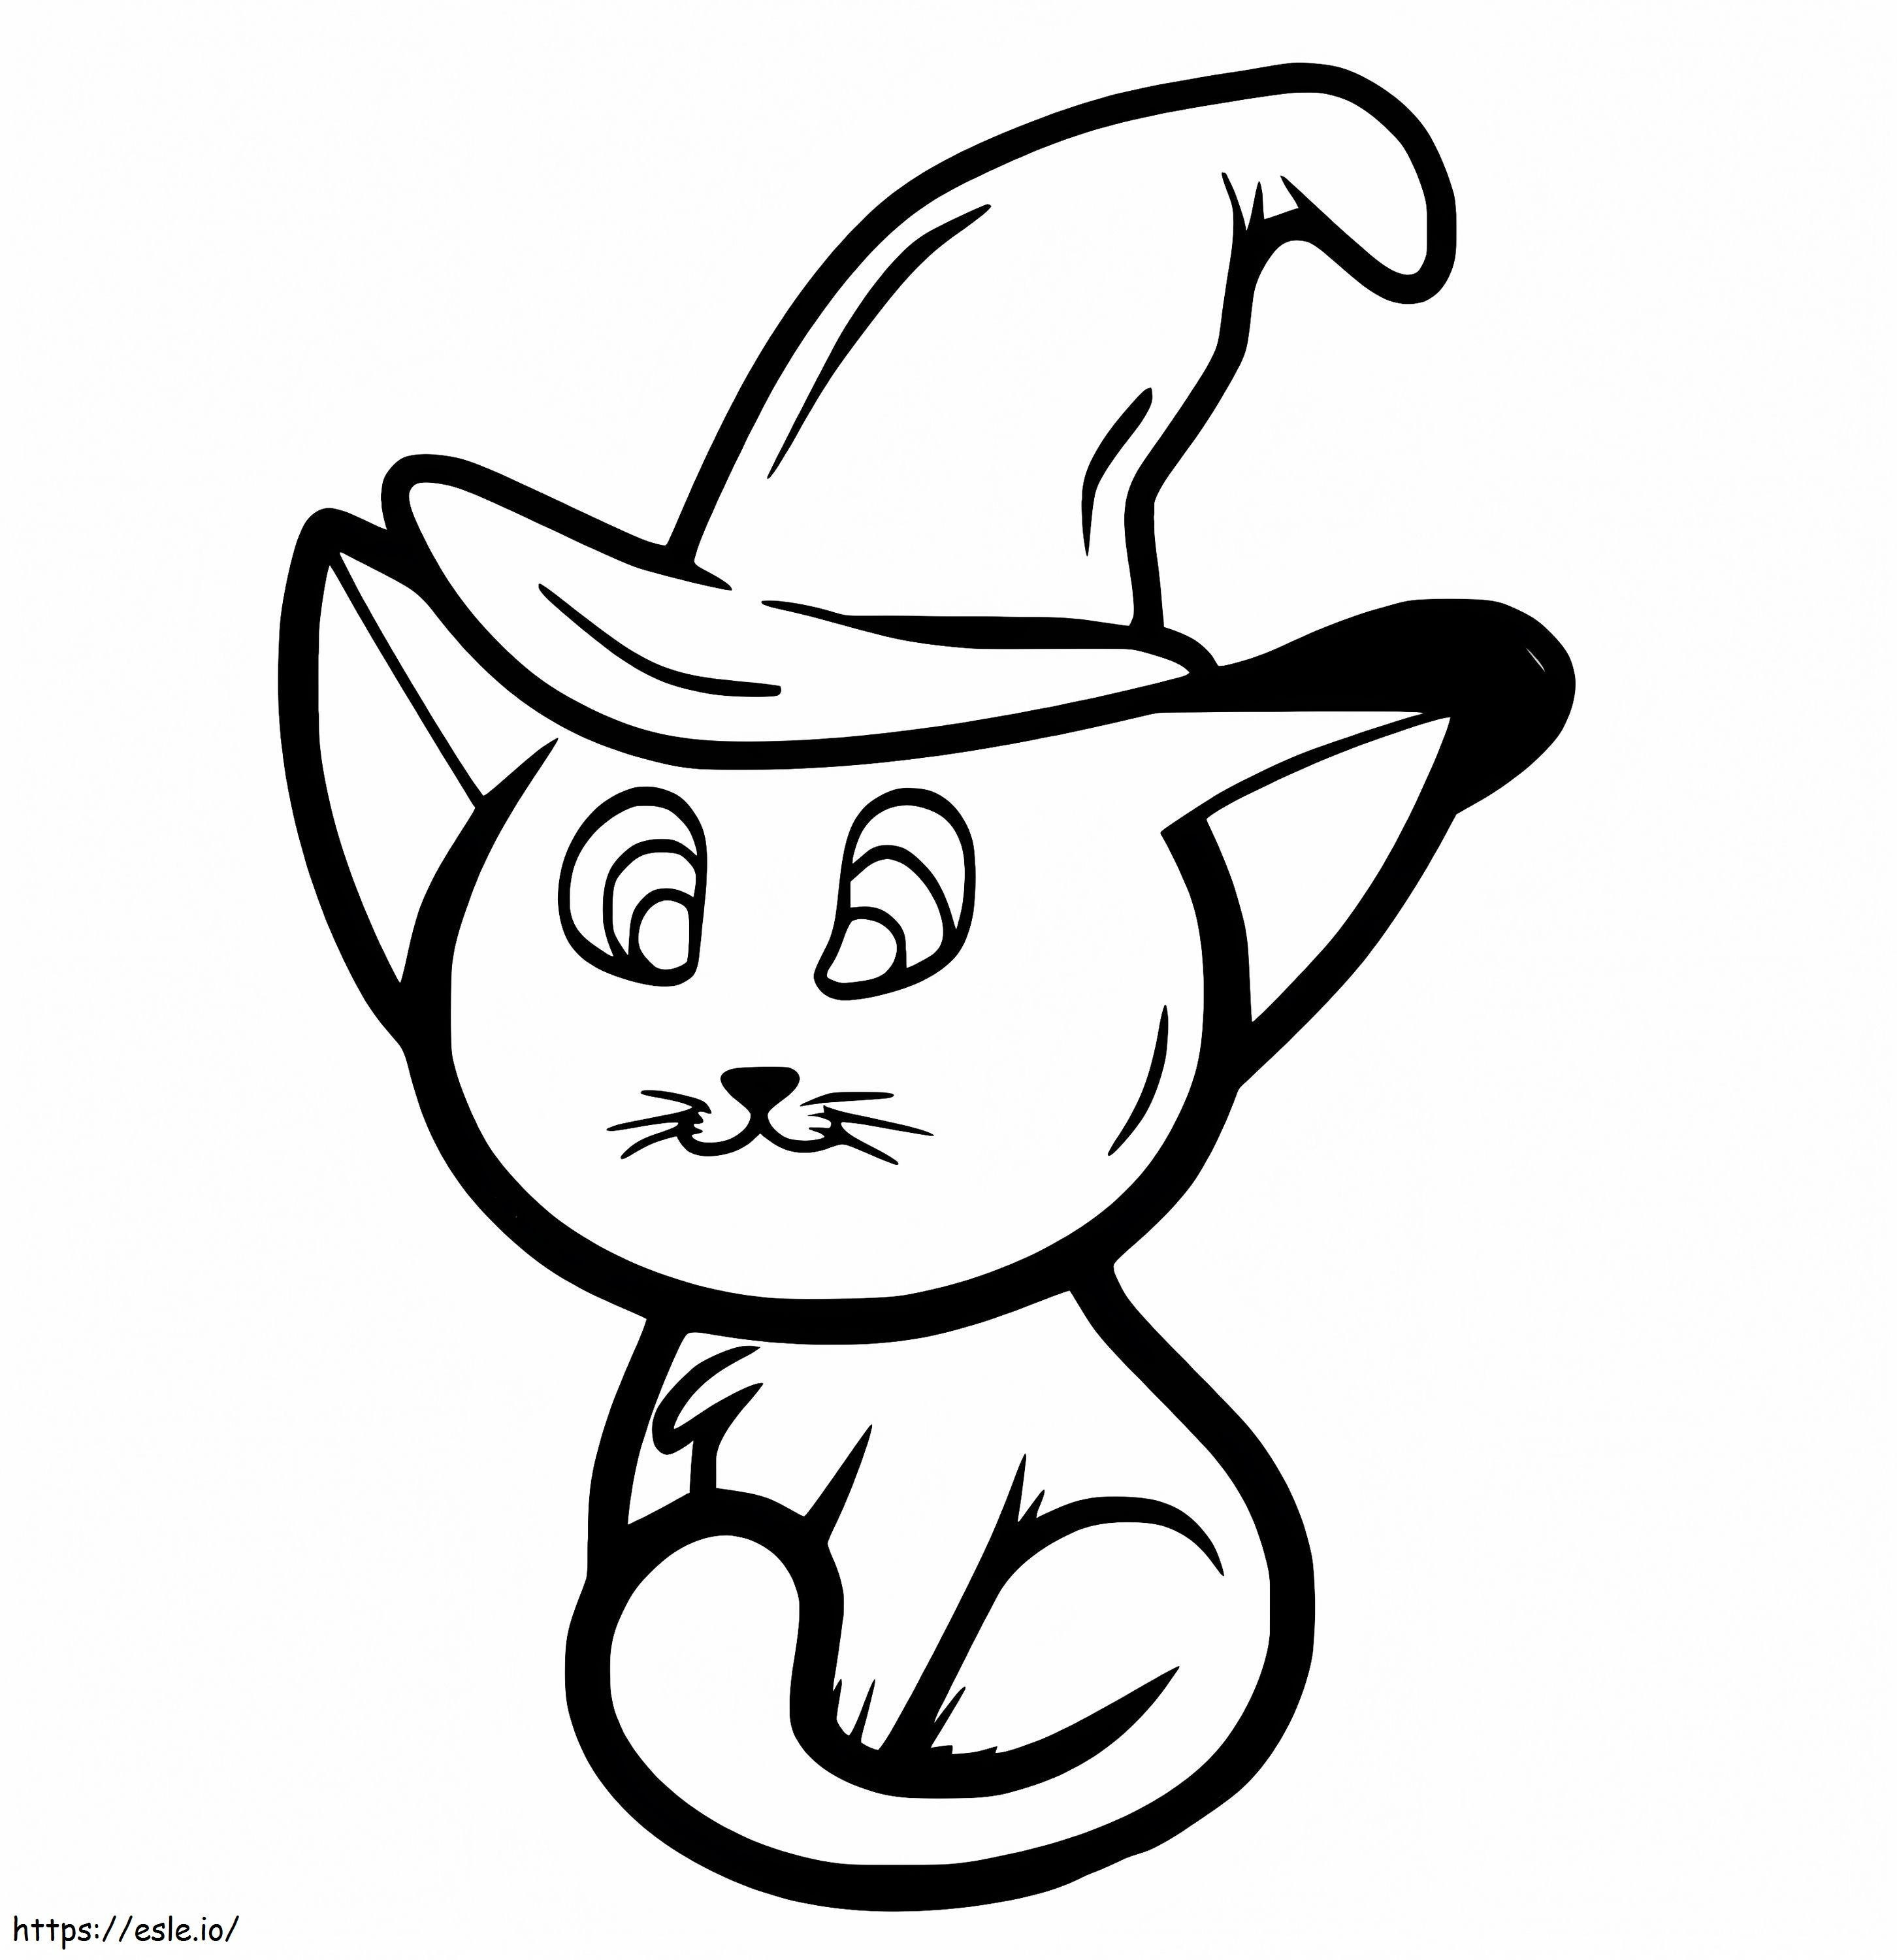 Gatito con sombrero de bruja para colorear